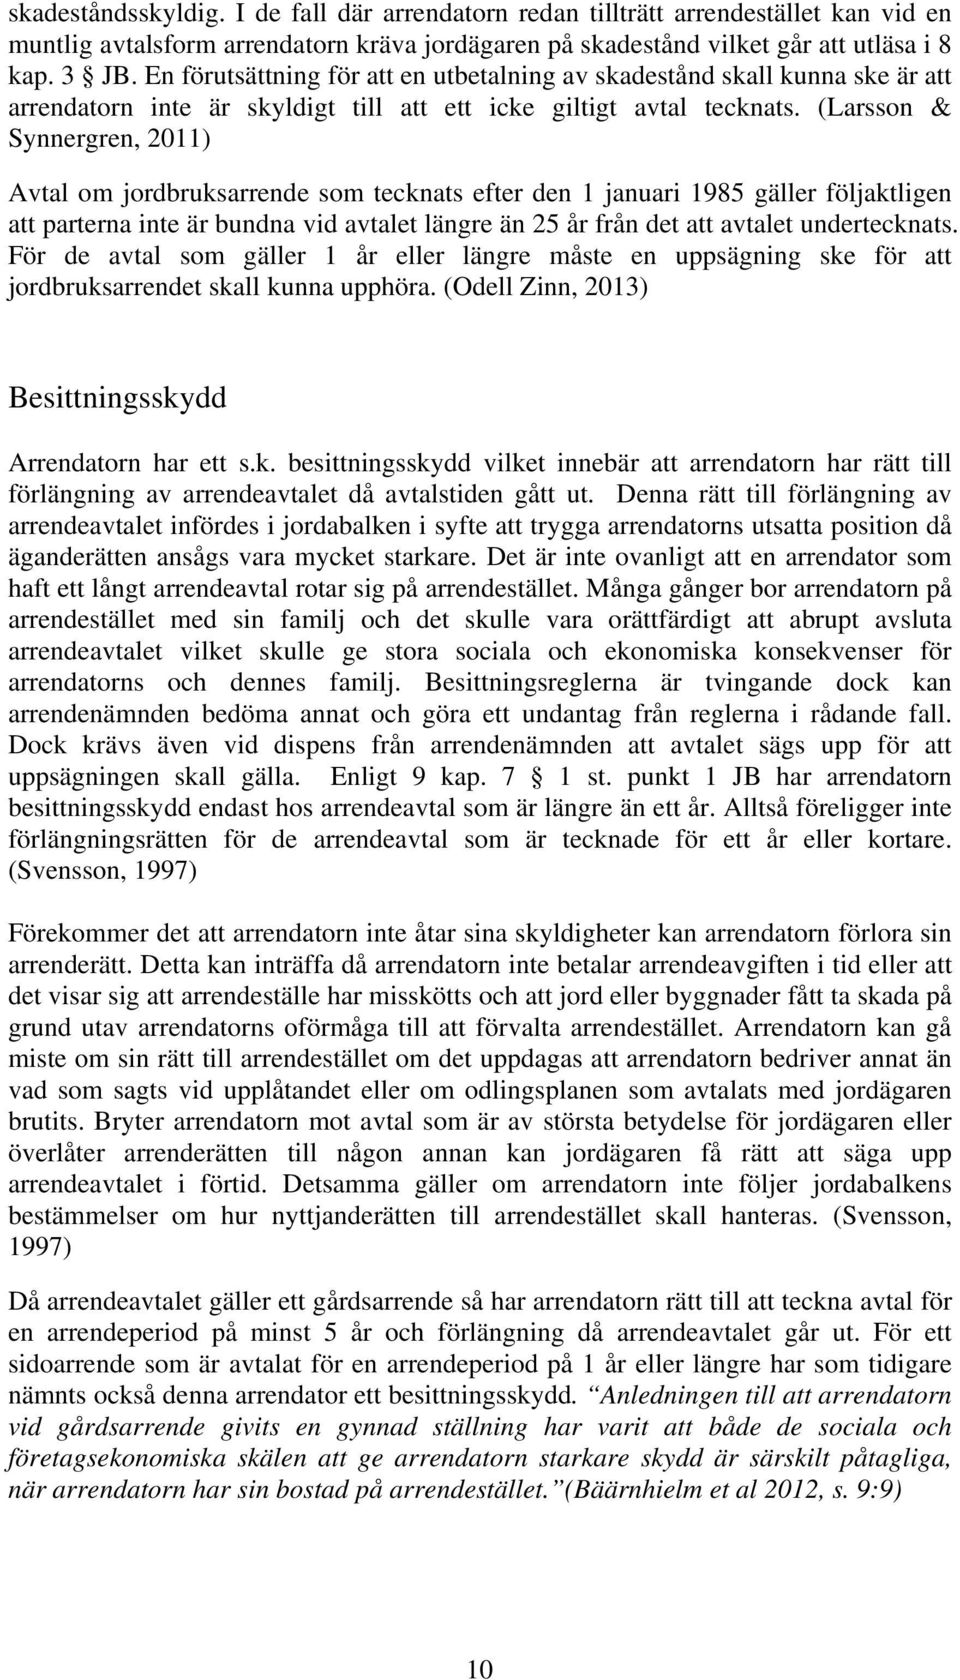 (Larsson & Synnergren, 2011) Avtal om jordbruksarrende som tecknats efter den 1 januari 1985 gäller följaktligen att parterna inte är bundna vid avtalet längre än 25 år från det att avtalet